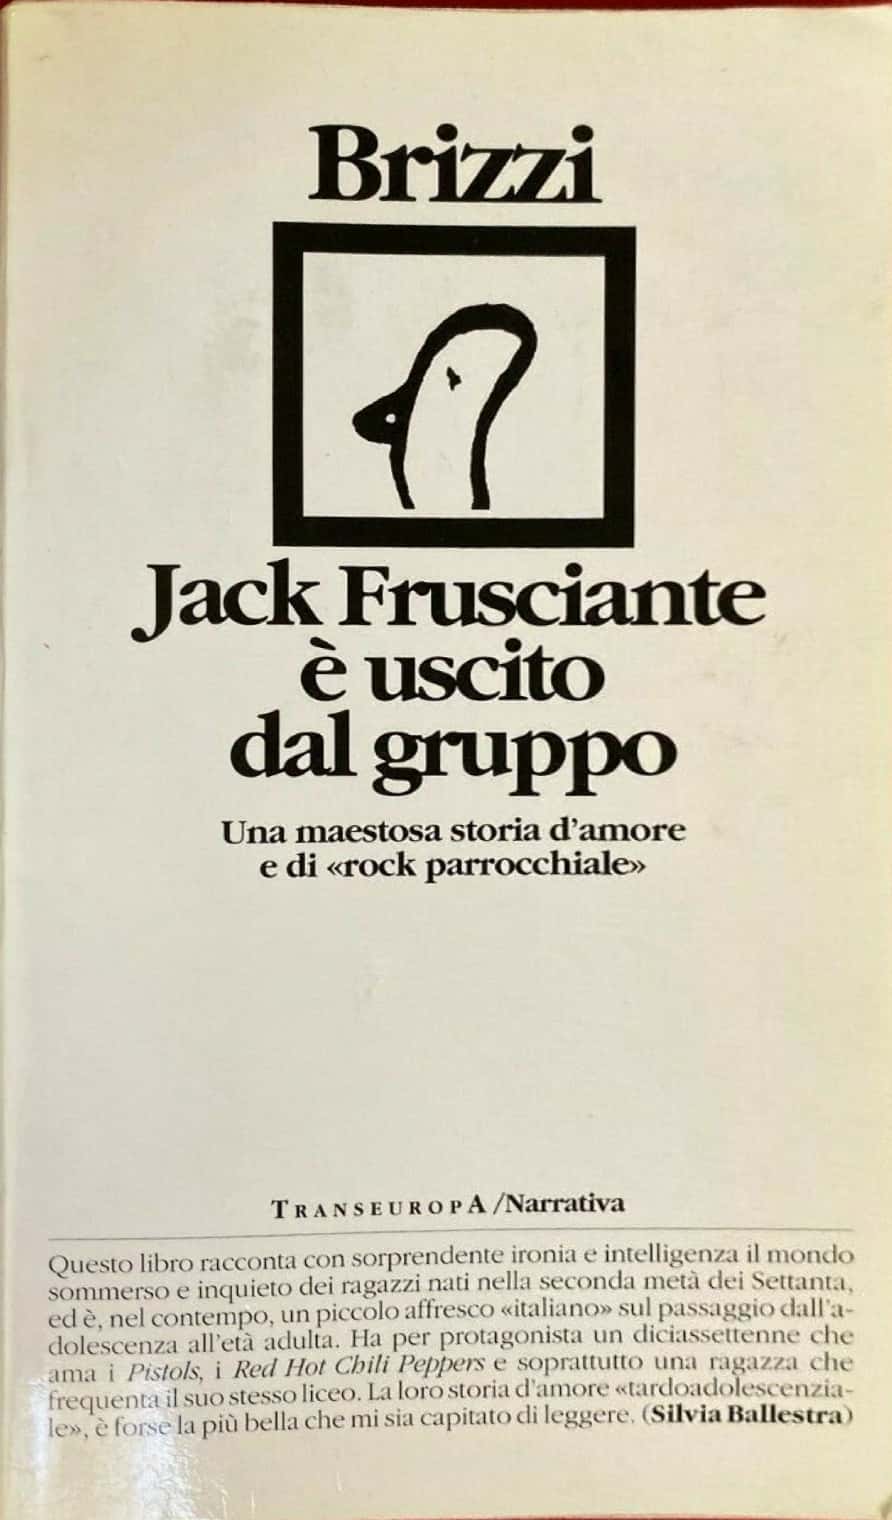 su eBay è stata venduta la prima edizione di “Jack Frusciante è uscito dal gruppo”